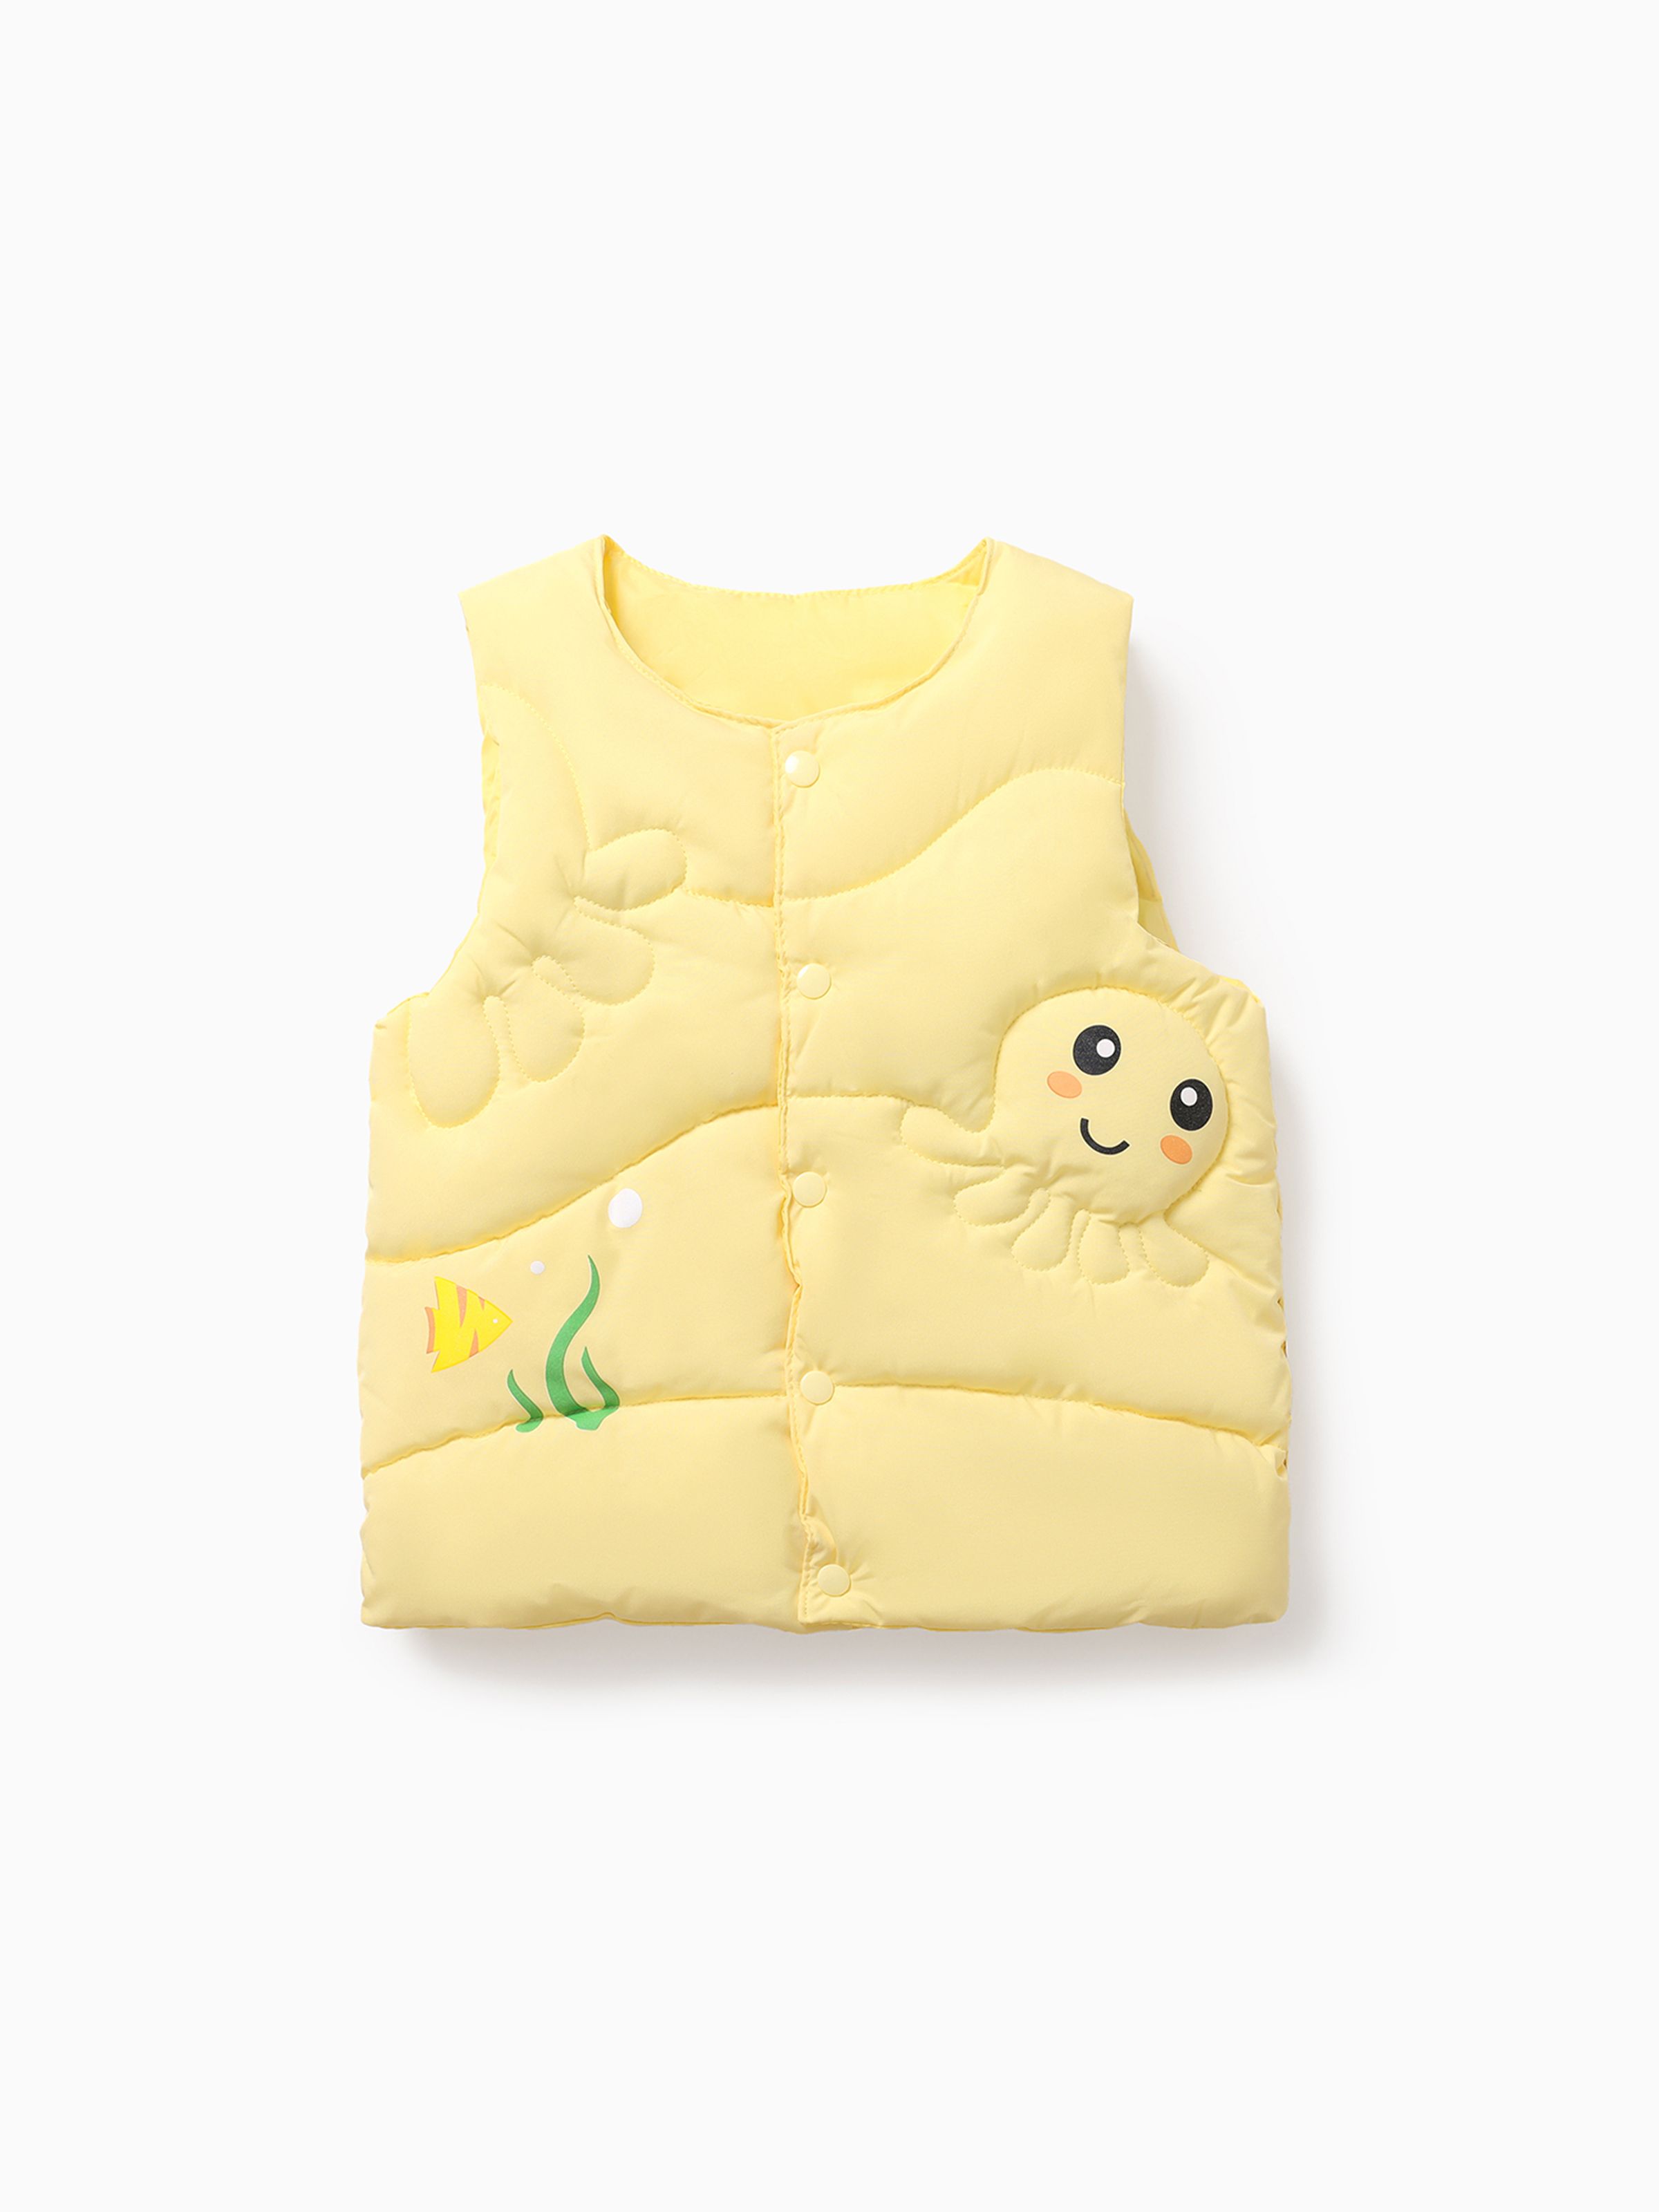 

Toddler Unisex Childlike Marine Cotton Tops & Jackets Set